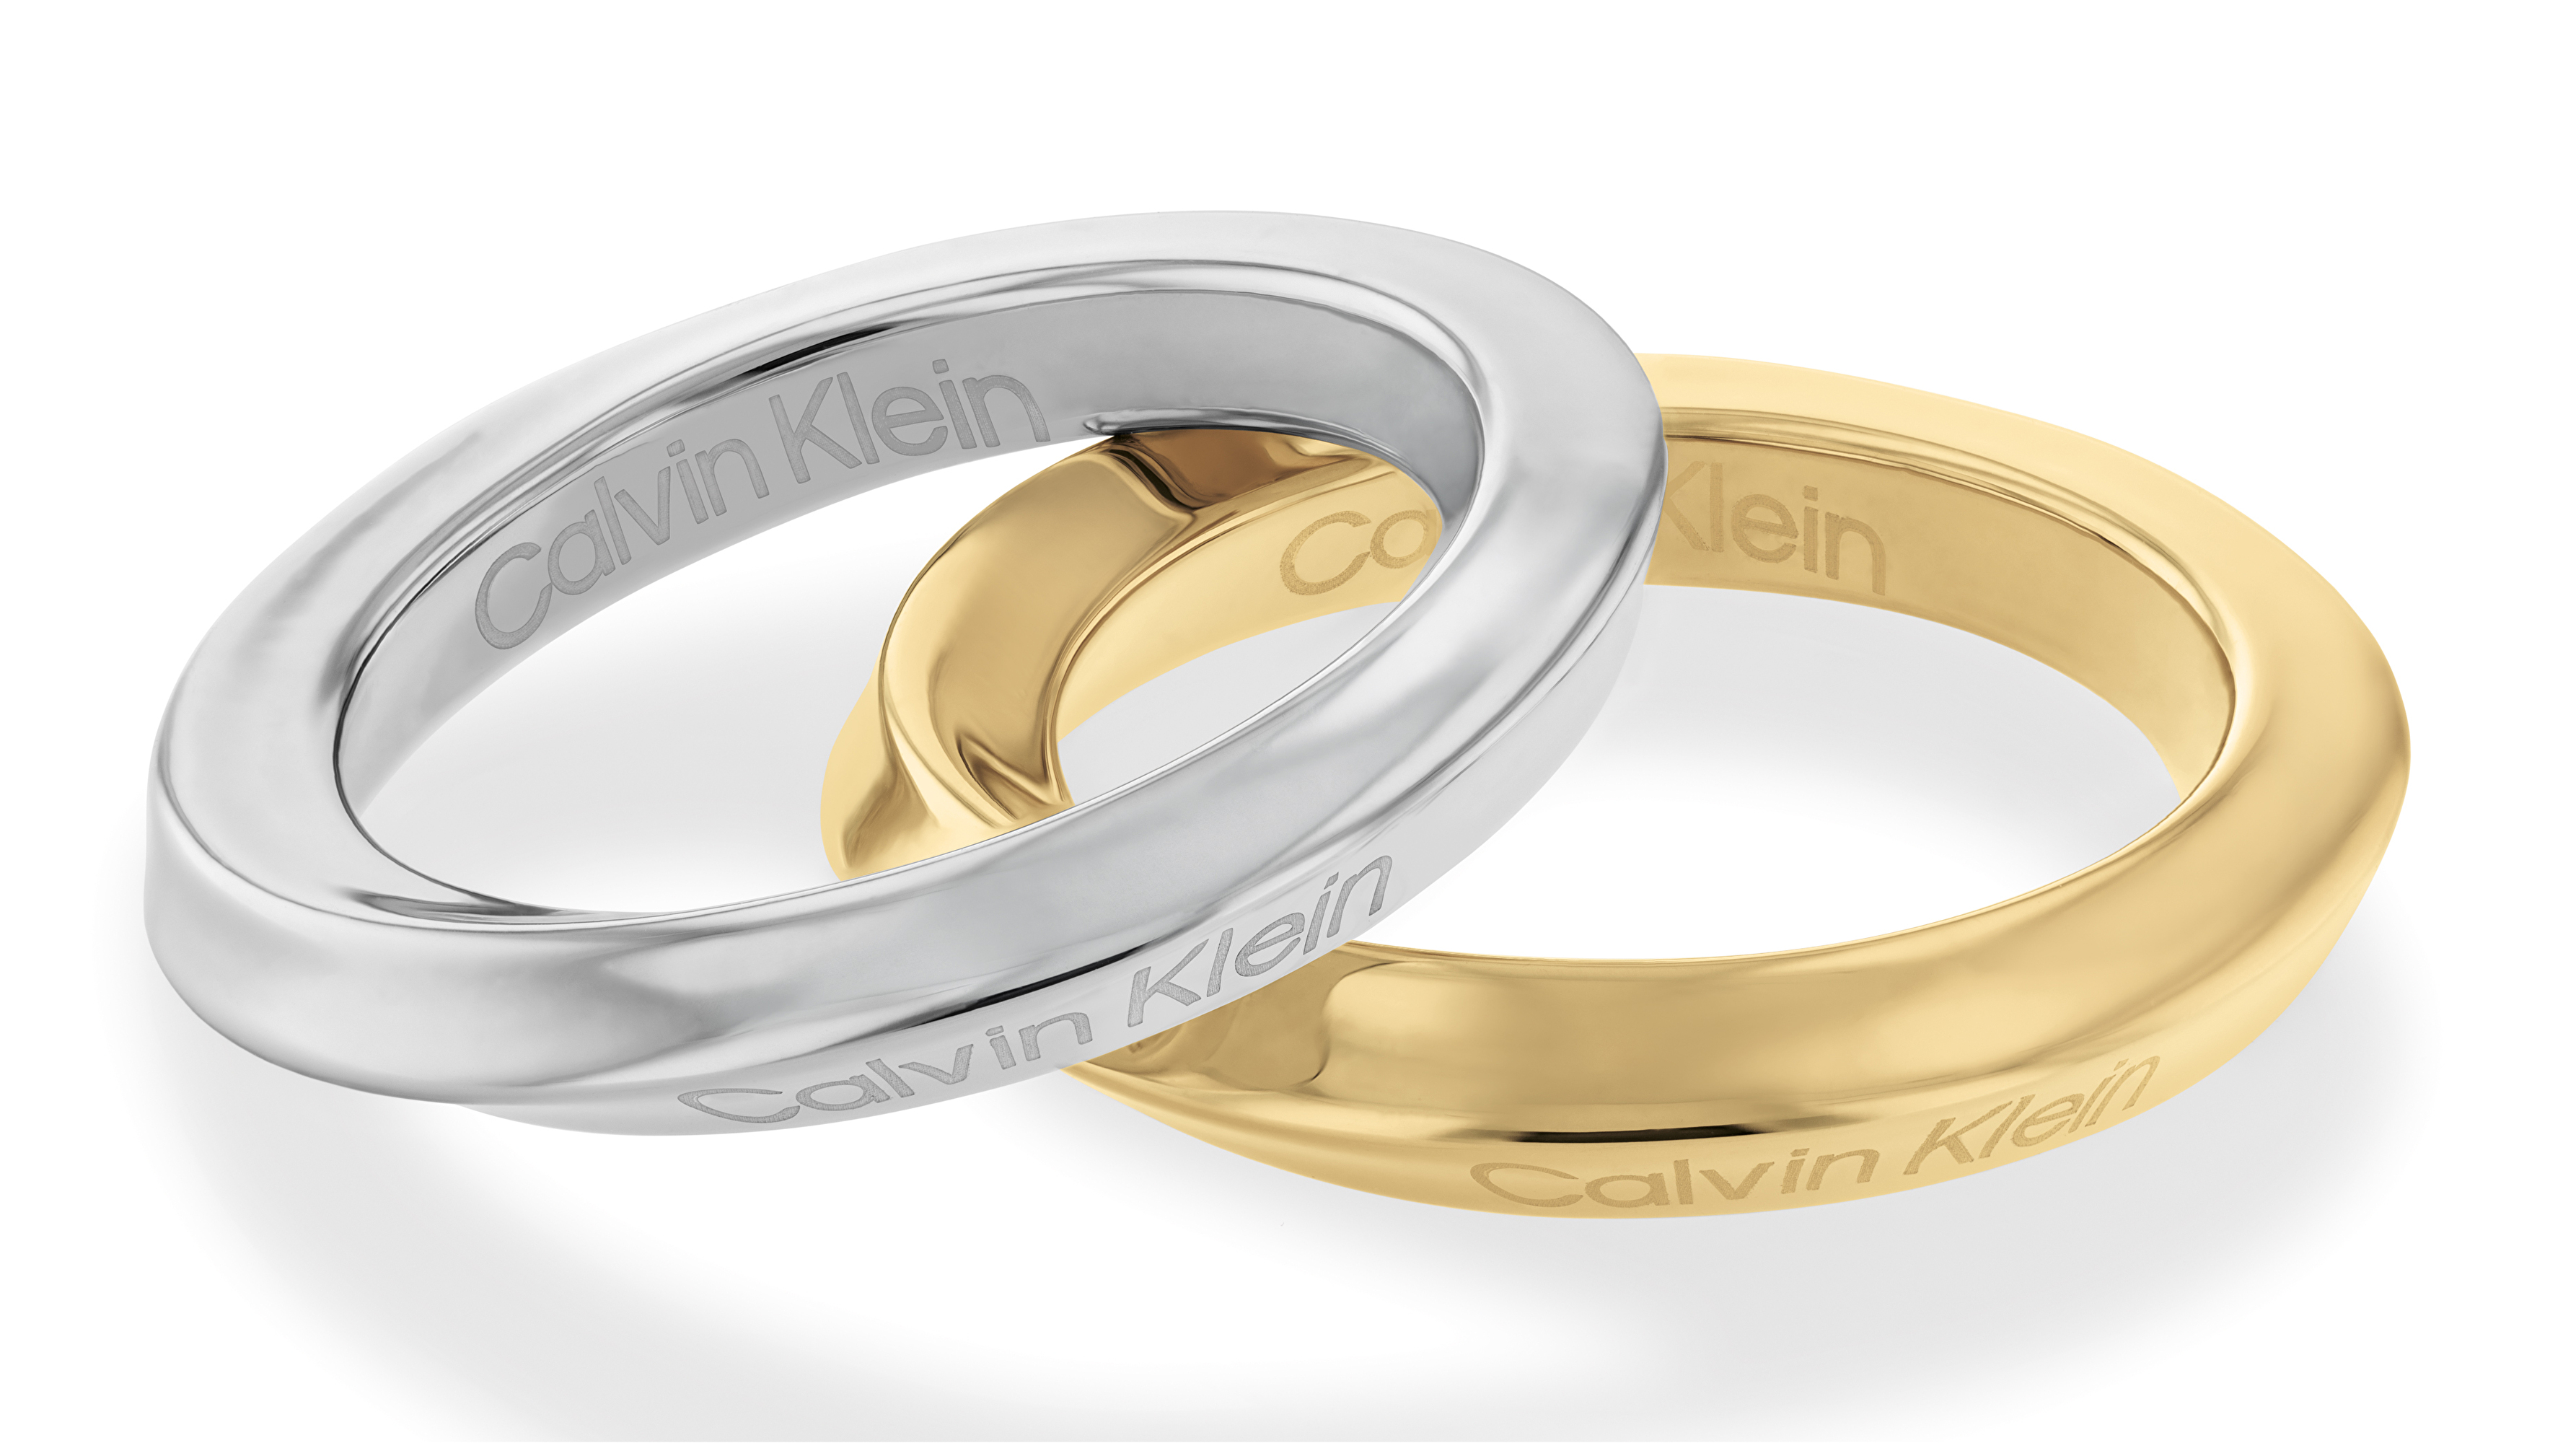 Calvin Klein Elegantní souprava ocelových prstenů Sculptural 35000330 56 mm